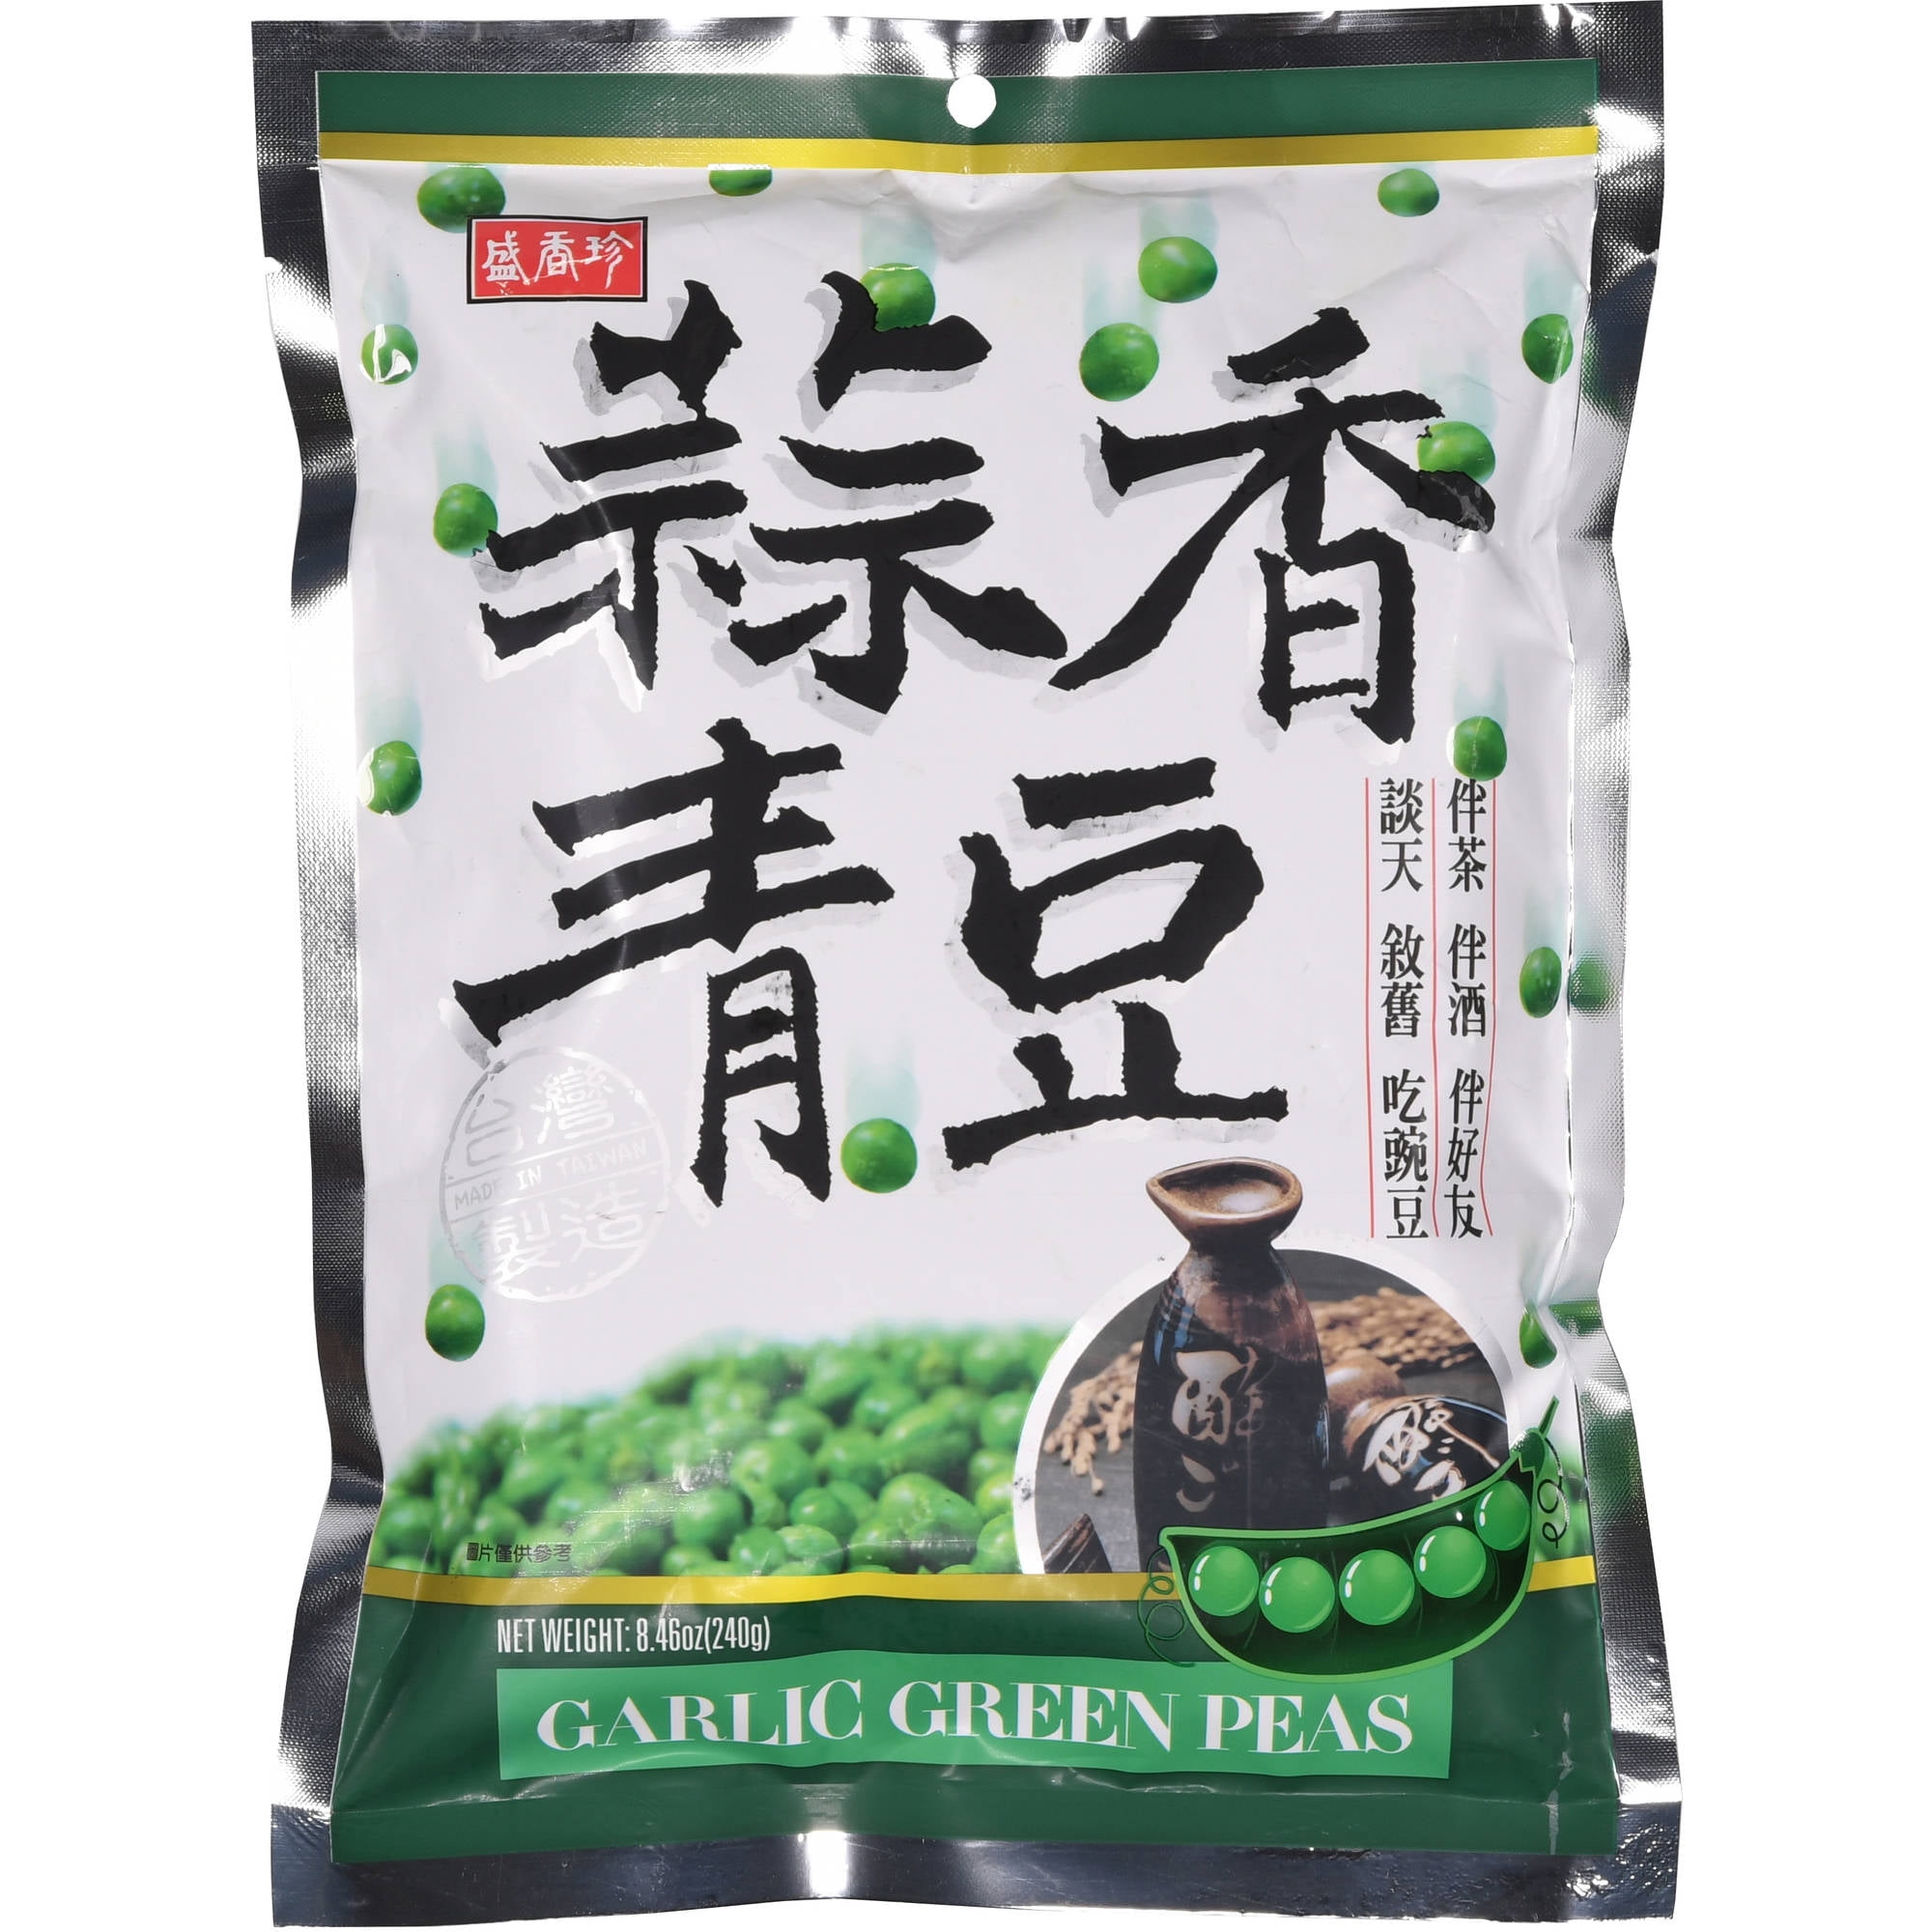 Shengxiangzhen Garlic Green Peas 8.46oz (Pack of 4)